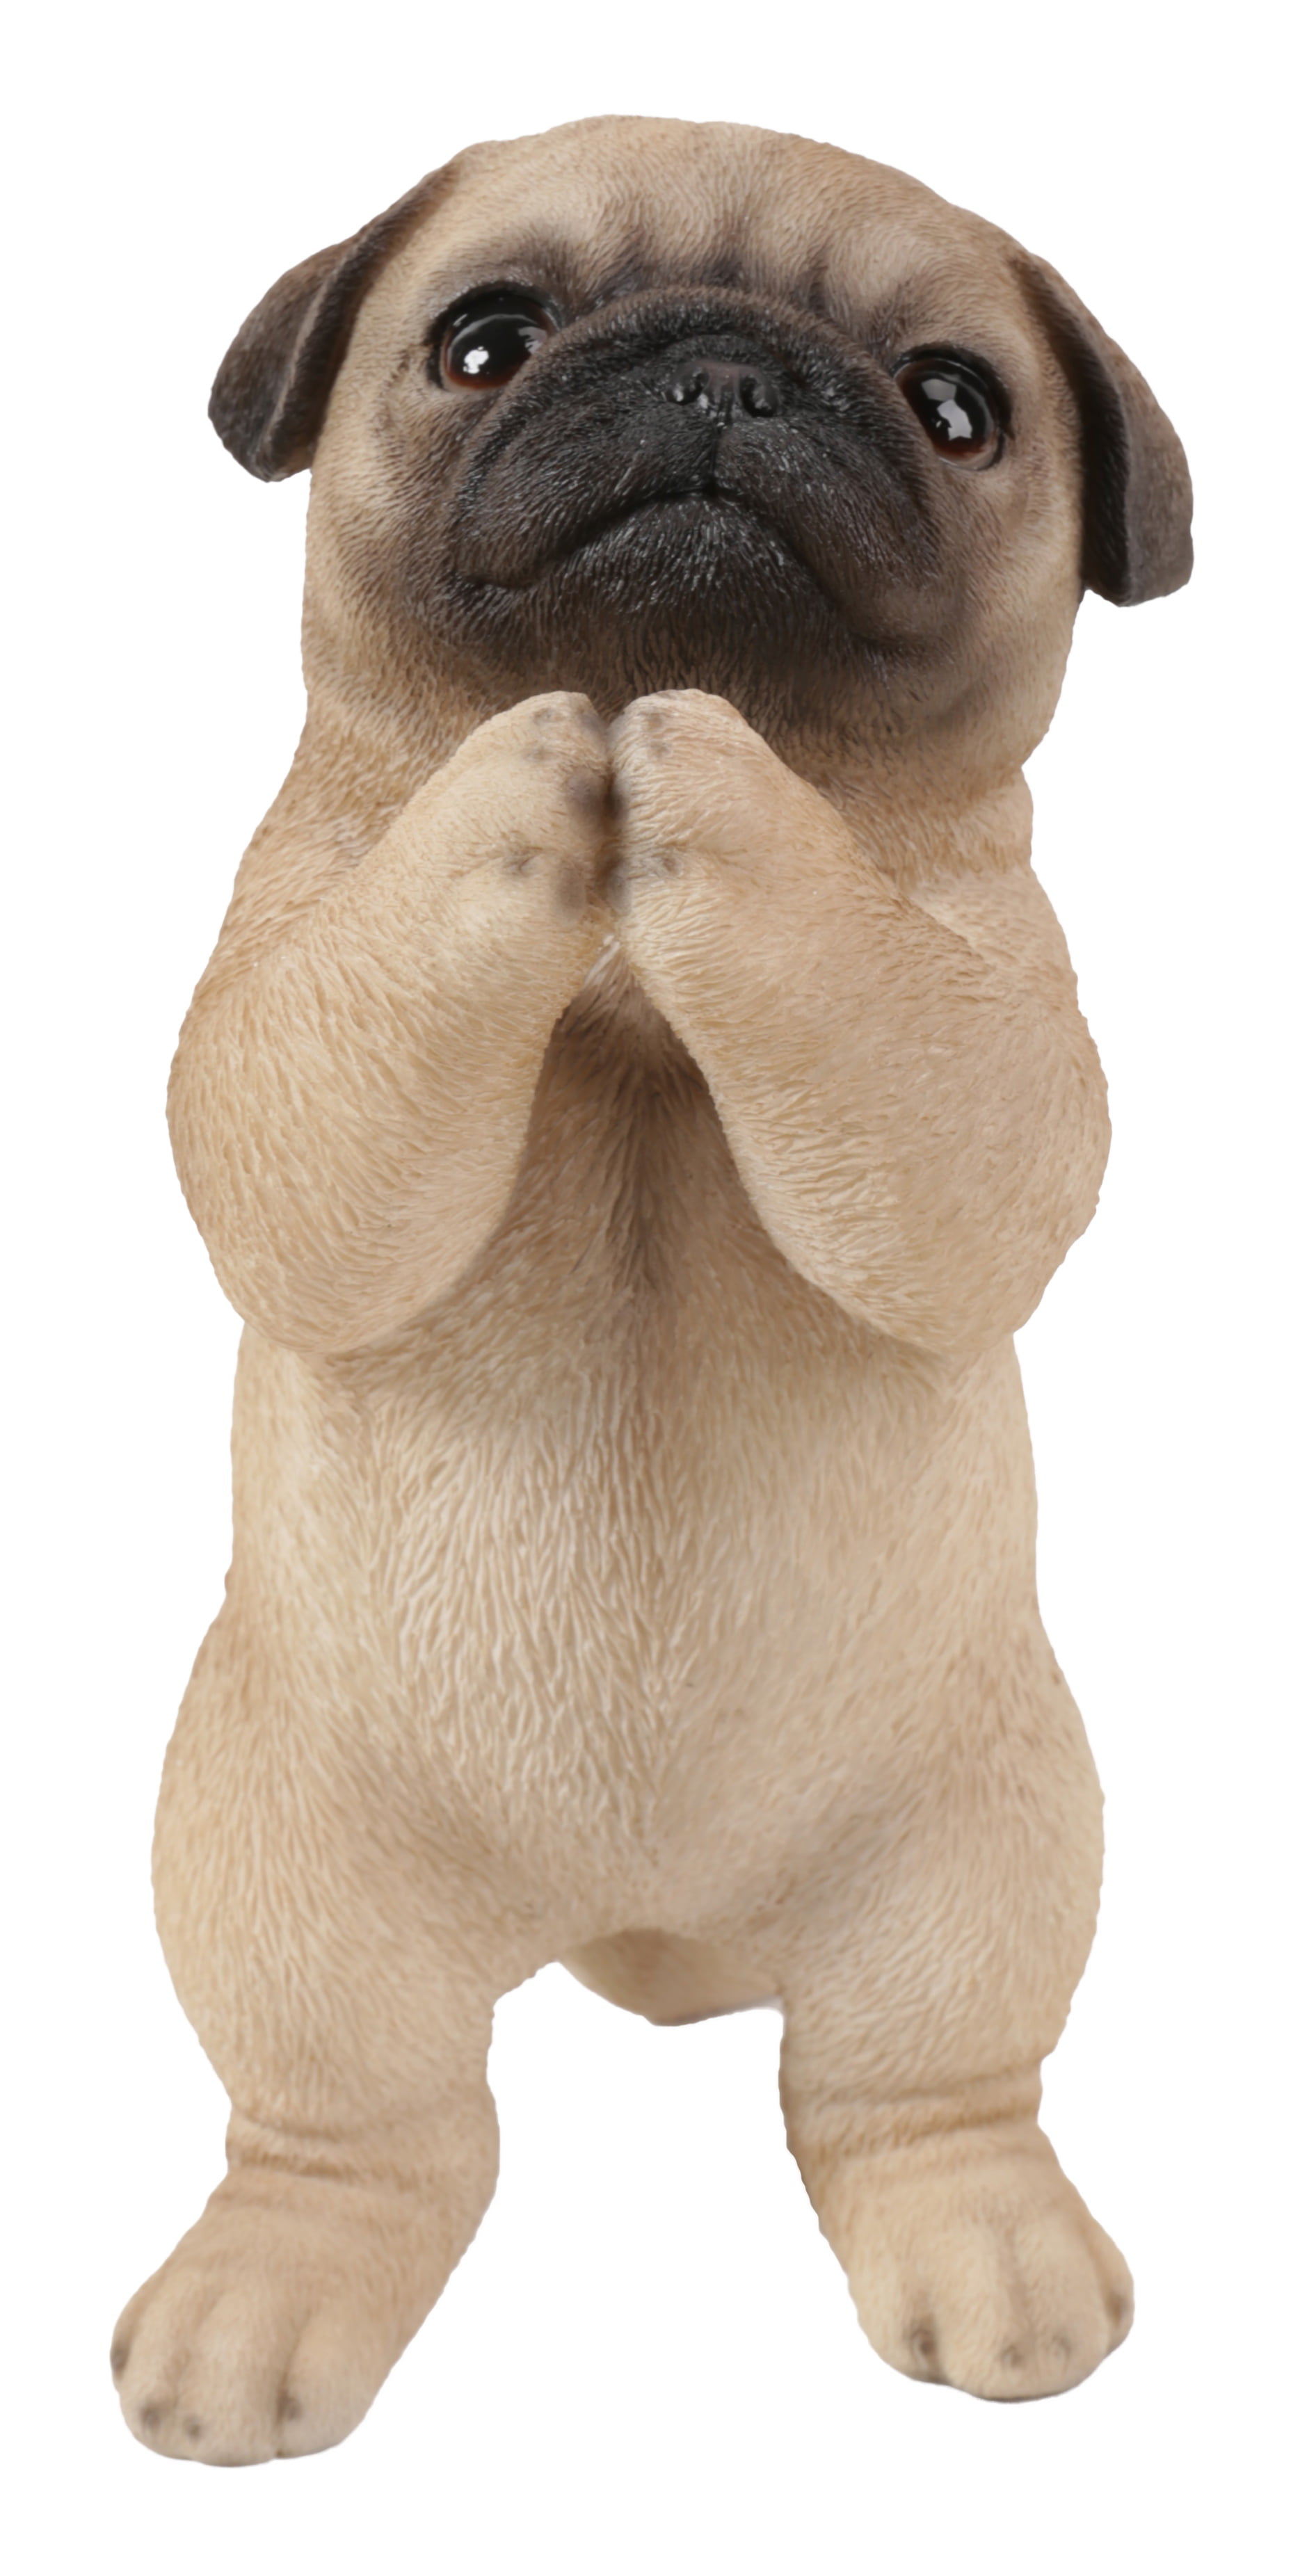 Little pug puppy doll toy Dog figure Beige puppy statue